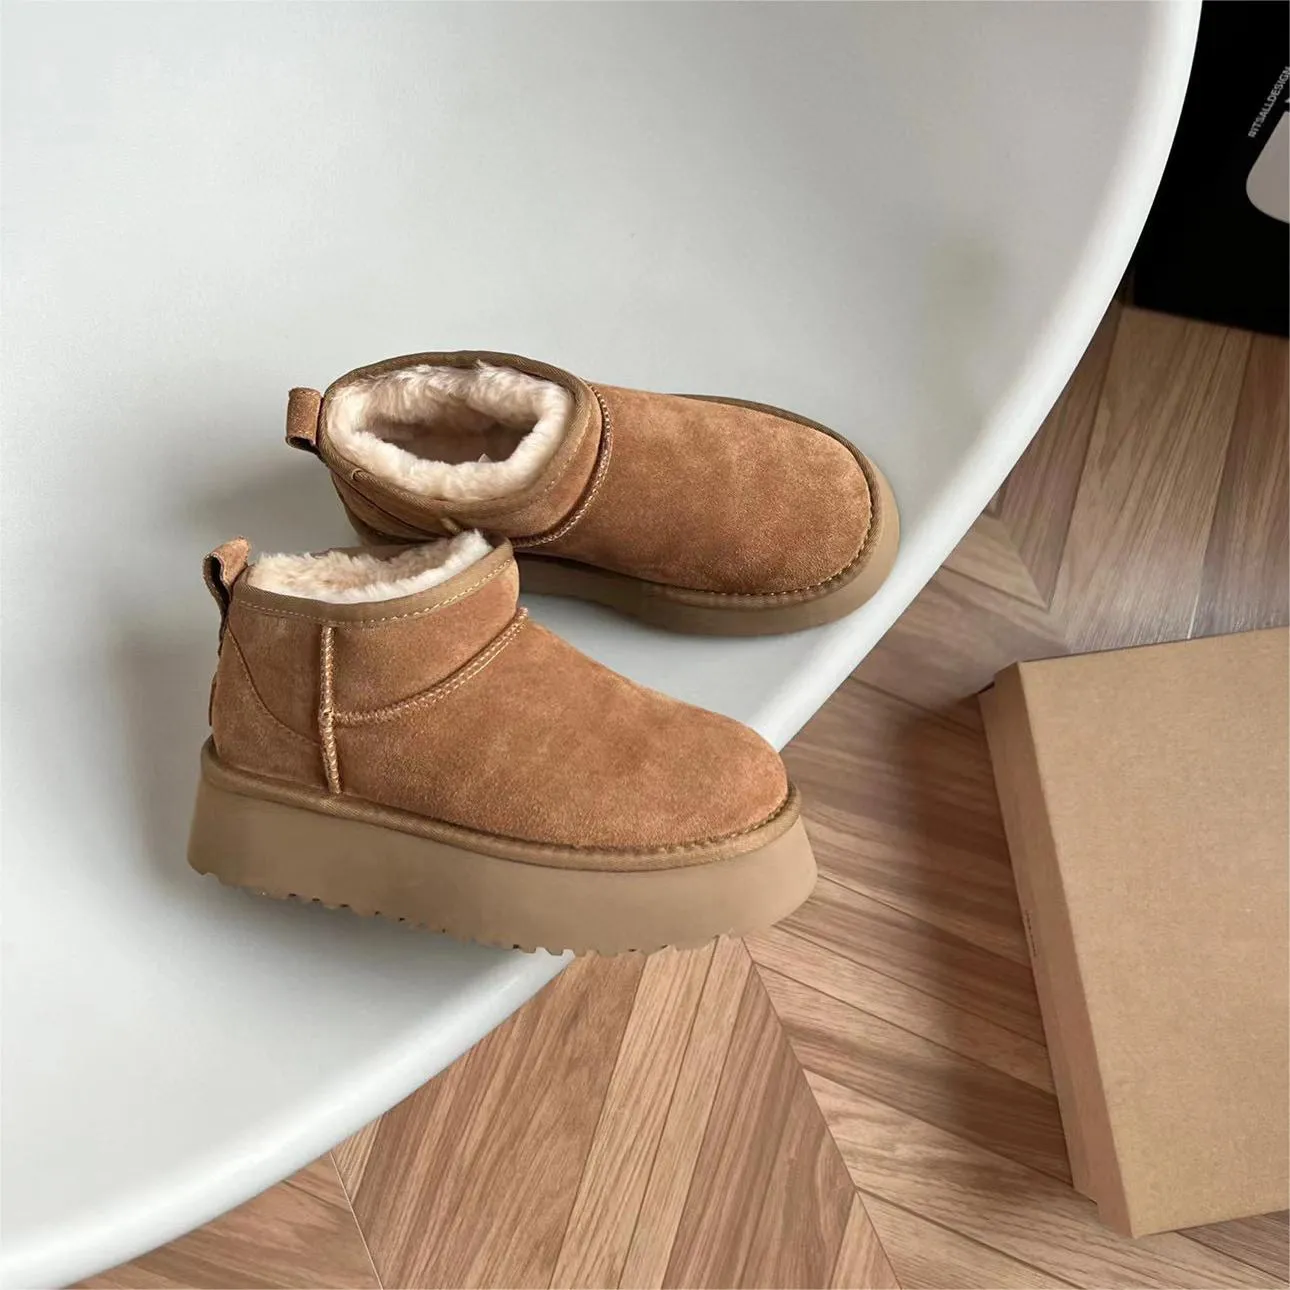 Buty klasyczne Ultra Mini platforma buty damskie Australia zimowe ciepłe buty na śnieg matowe futro zamszowe designerskie botki rozmiar 35-42